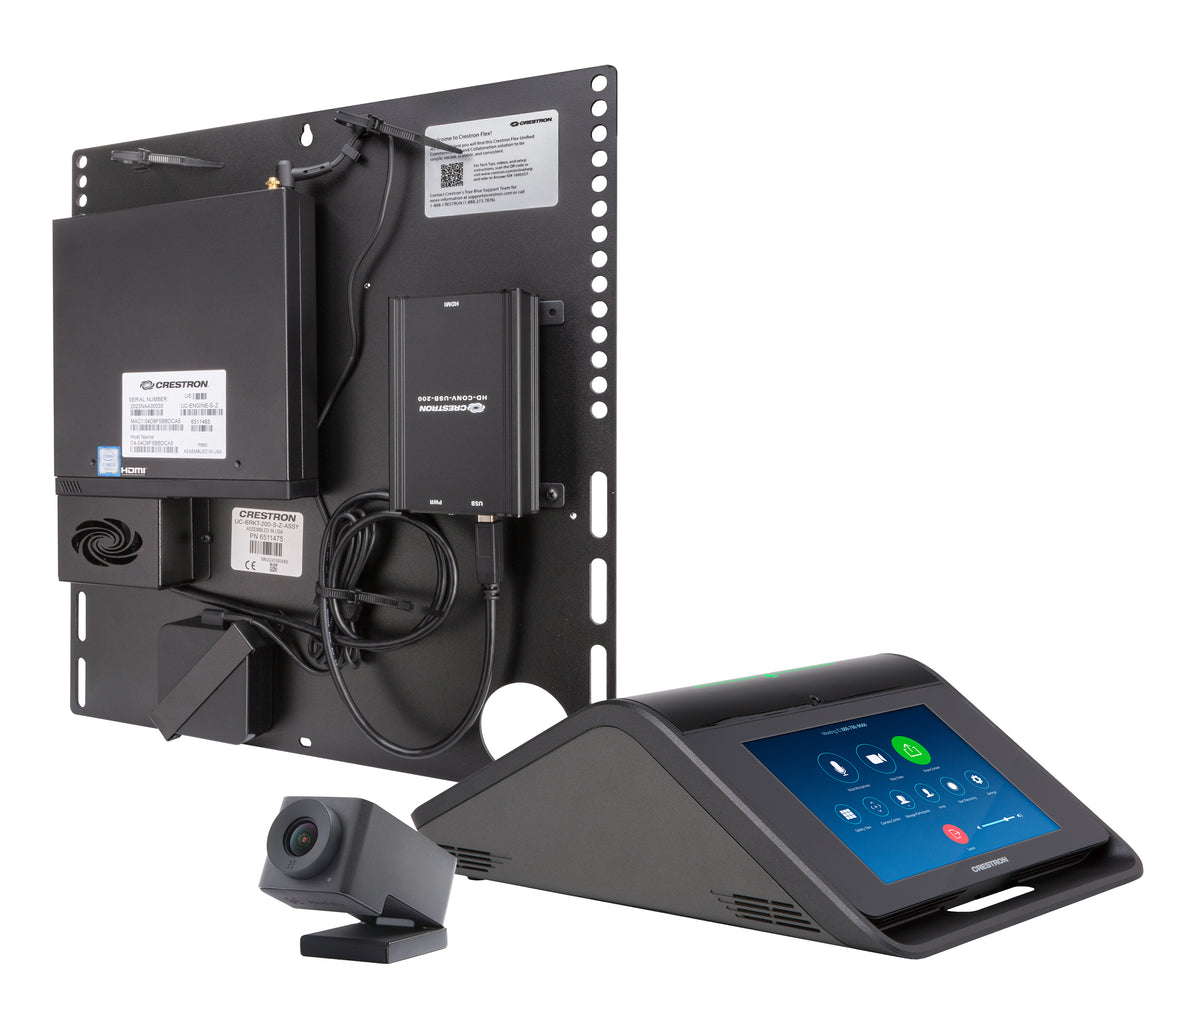 Crestron Flex UC-M50-Z - Para salas médias no Microsoft Zoom - conjunto para vídeo conferência (camera, consola de ecrã tátil, mini PC) - Certificação Zoom - preto